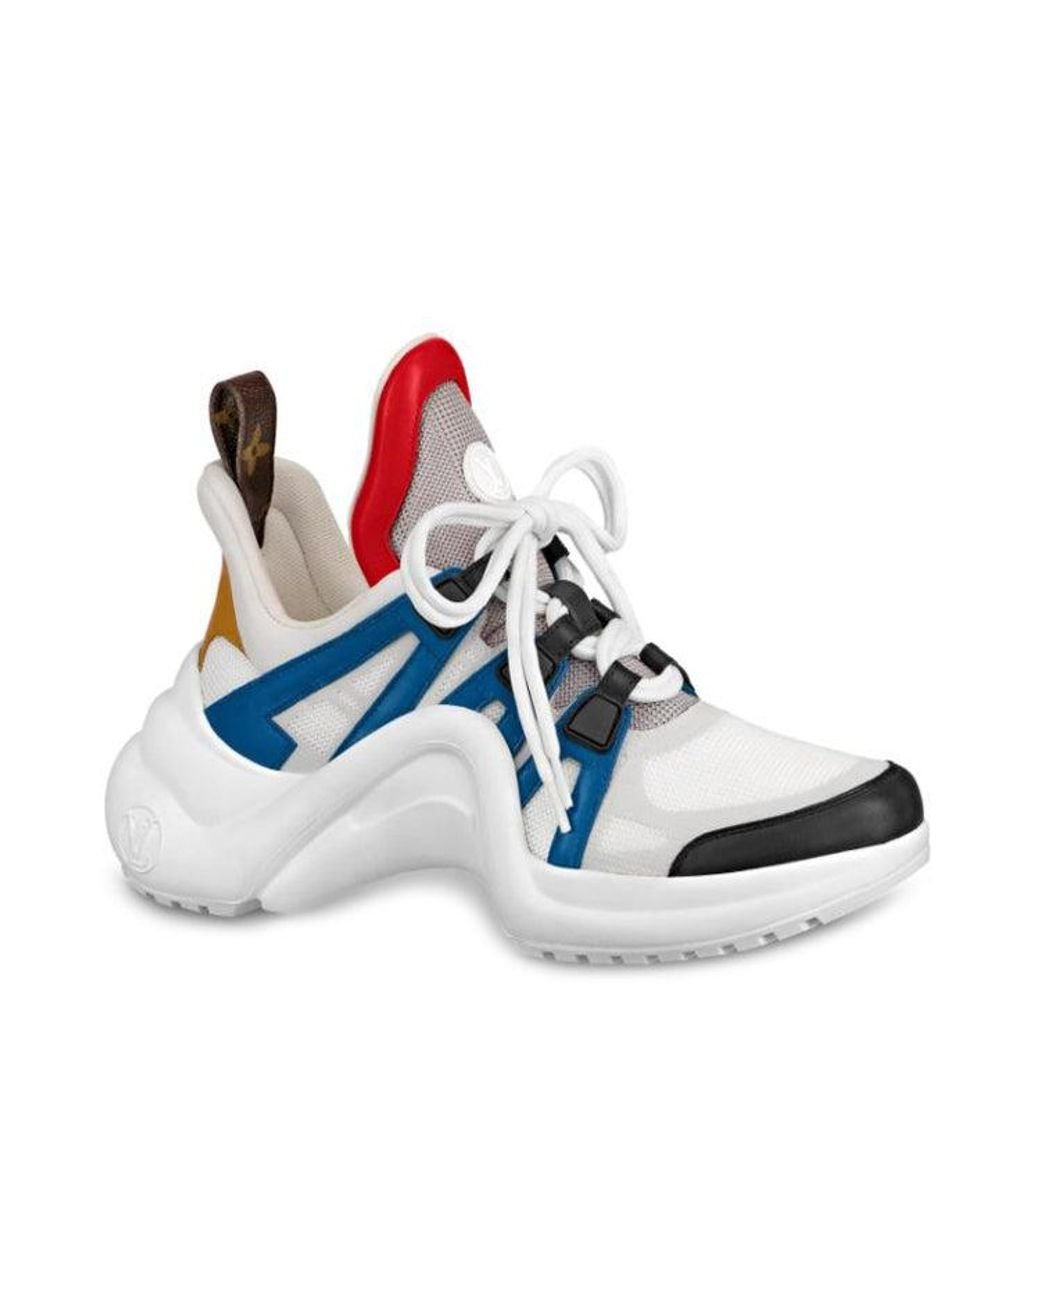 Louis Vuitton, Shoes, Louis Vuitton Lv Archlight Sneaker